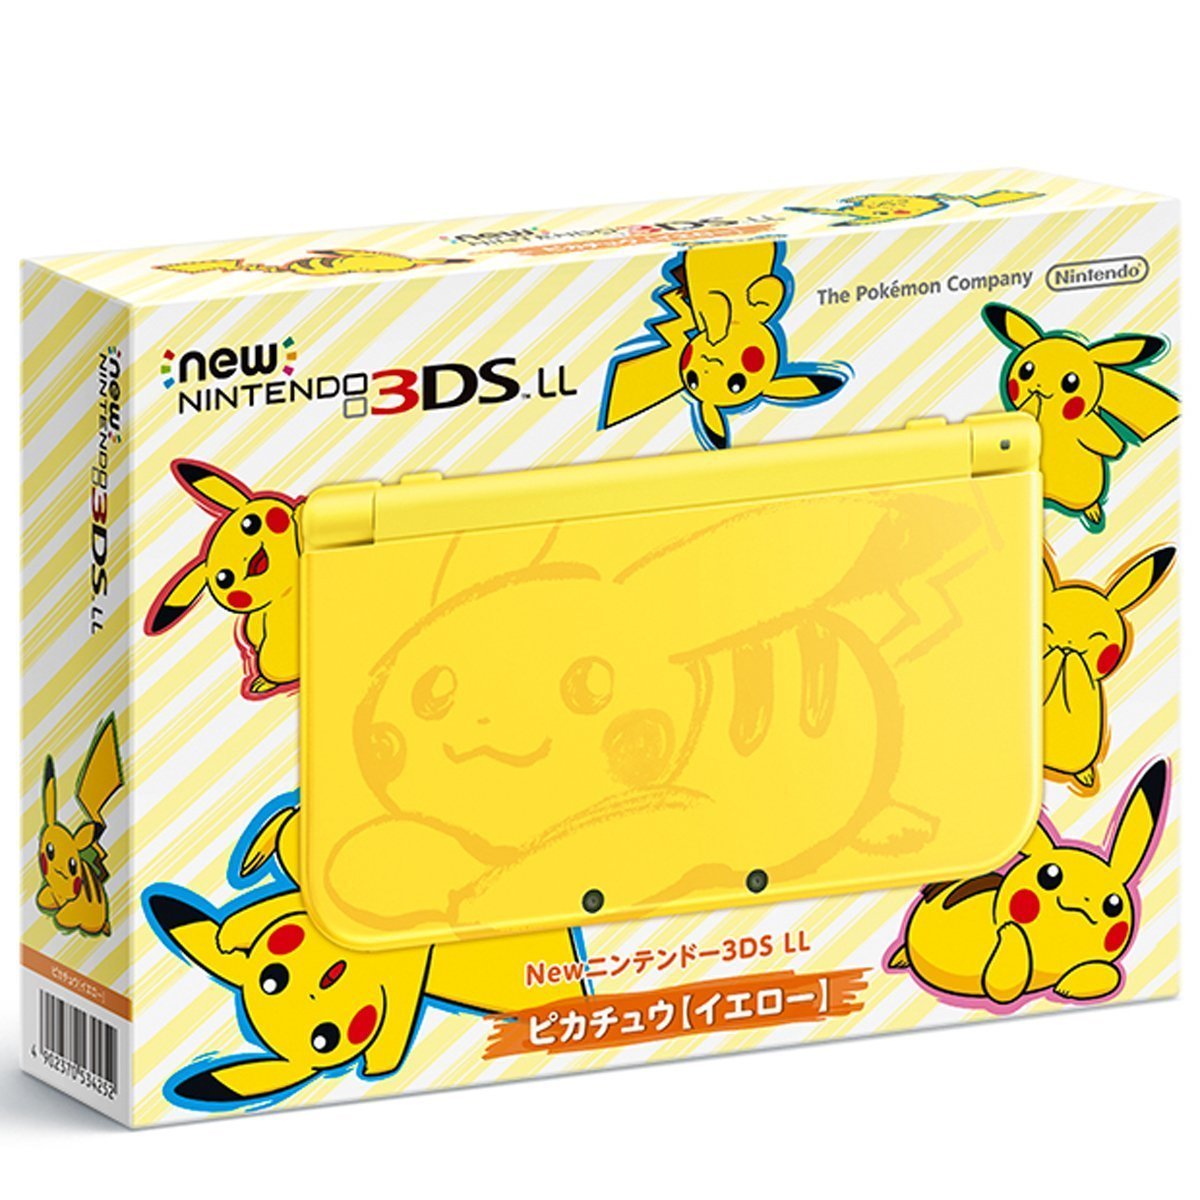 【最新版】New 3DSLLピカチュウを最安値で予約できるショップ【在庫あり】: Newニンテンドー3DS LL ピカチュウ【イエロー】を激安